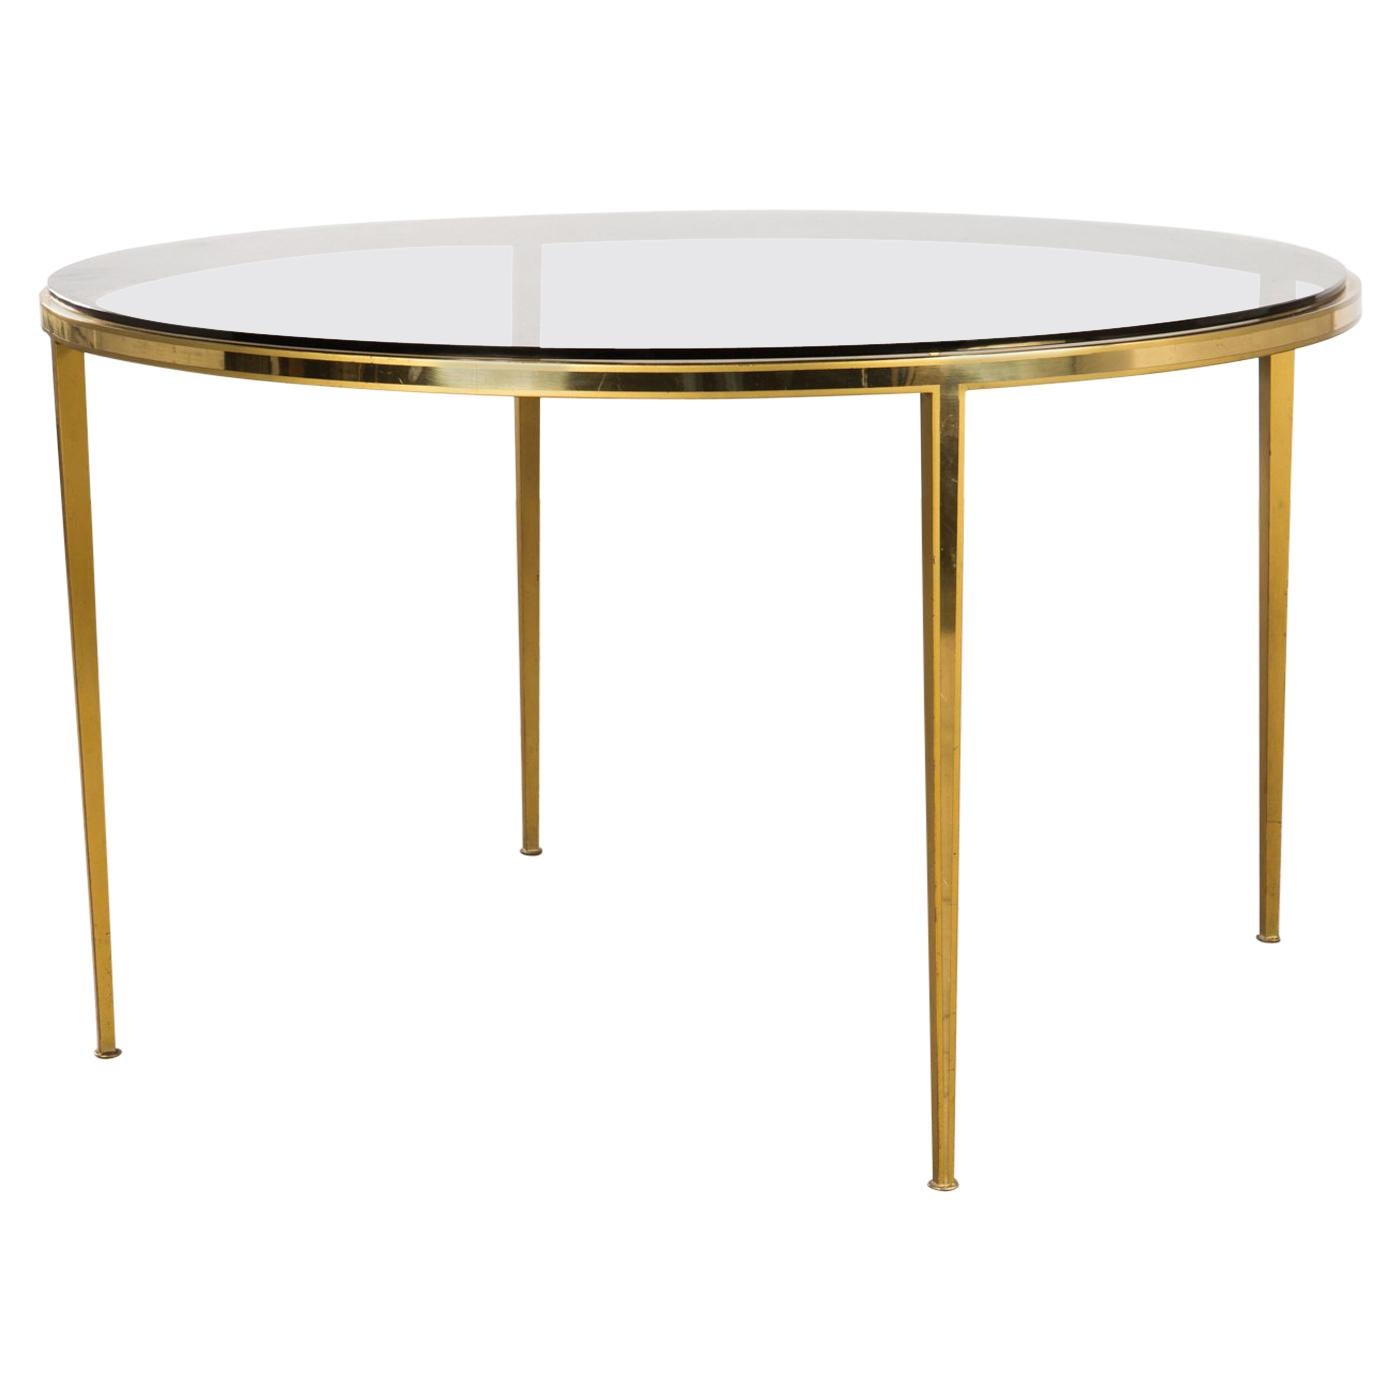 Golden circular Mid-Century Modern Brass coffee table by Vereinigte Werkstätten For Sale